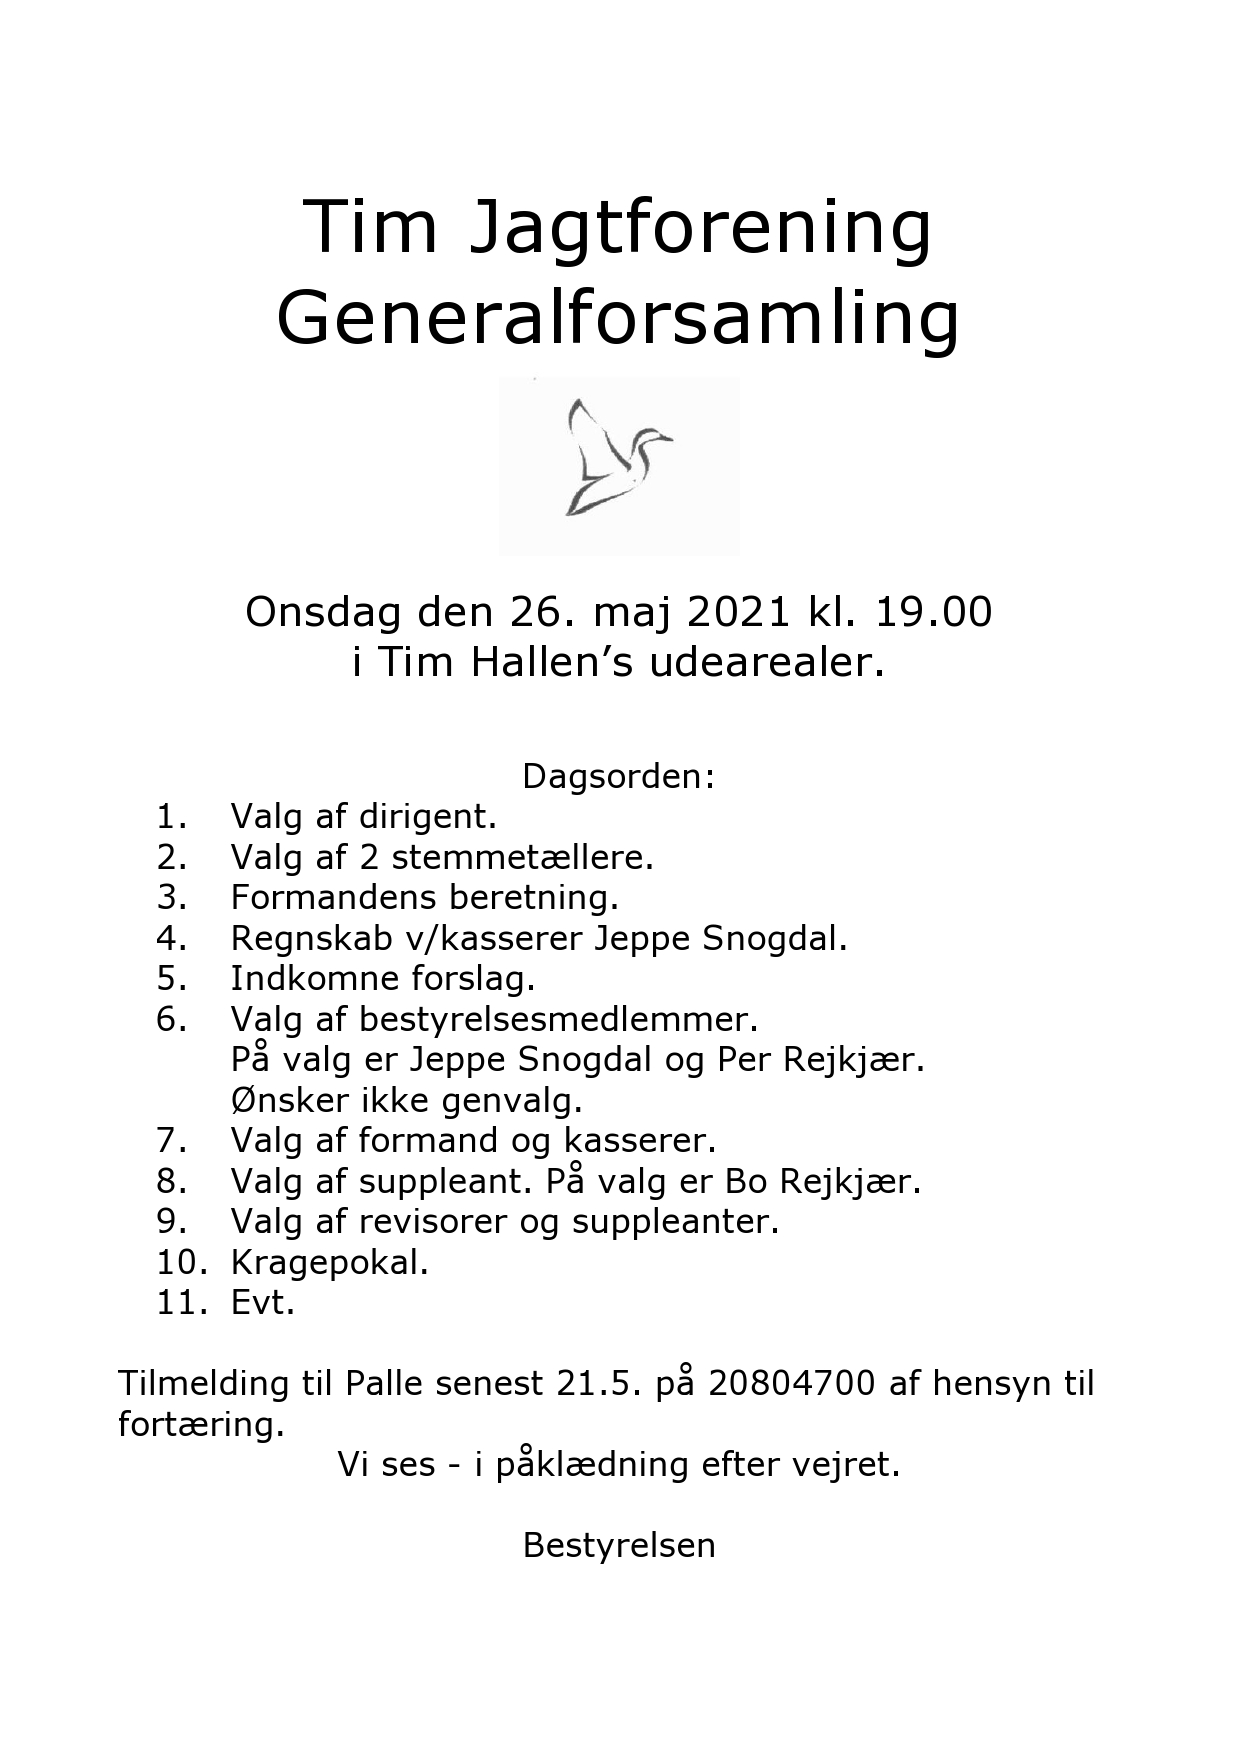 Jagtforening Generalforsamling – Velkommen Tim Sogn